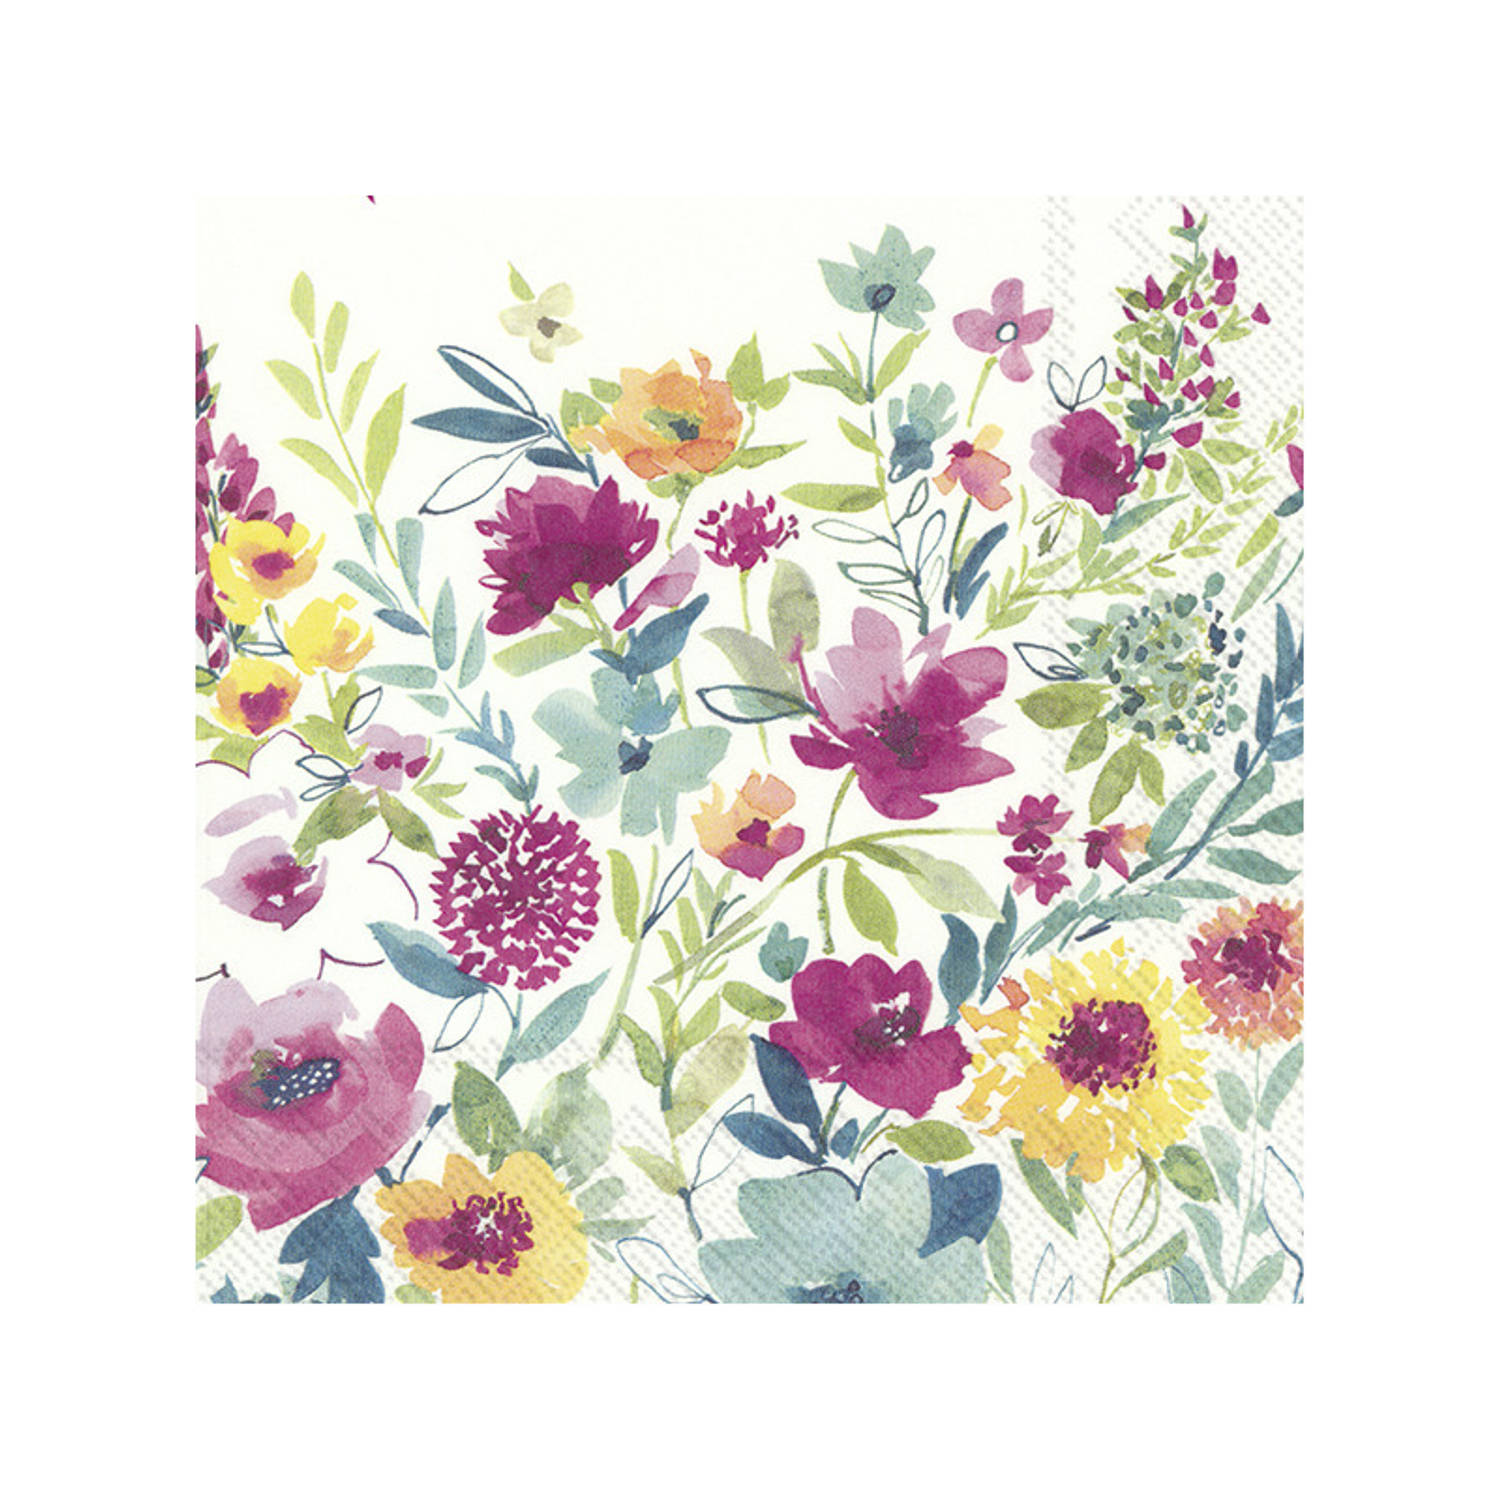 20x Gekleurde 3-laags servetten bloemen 33 x 33 cm - Voorjaar/lente bloemen thema